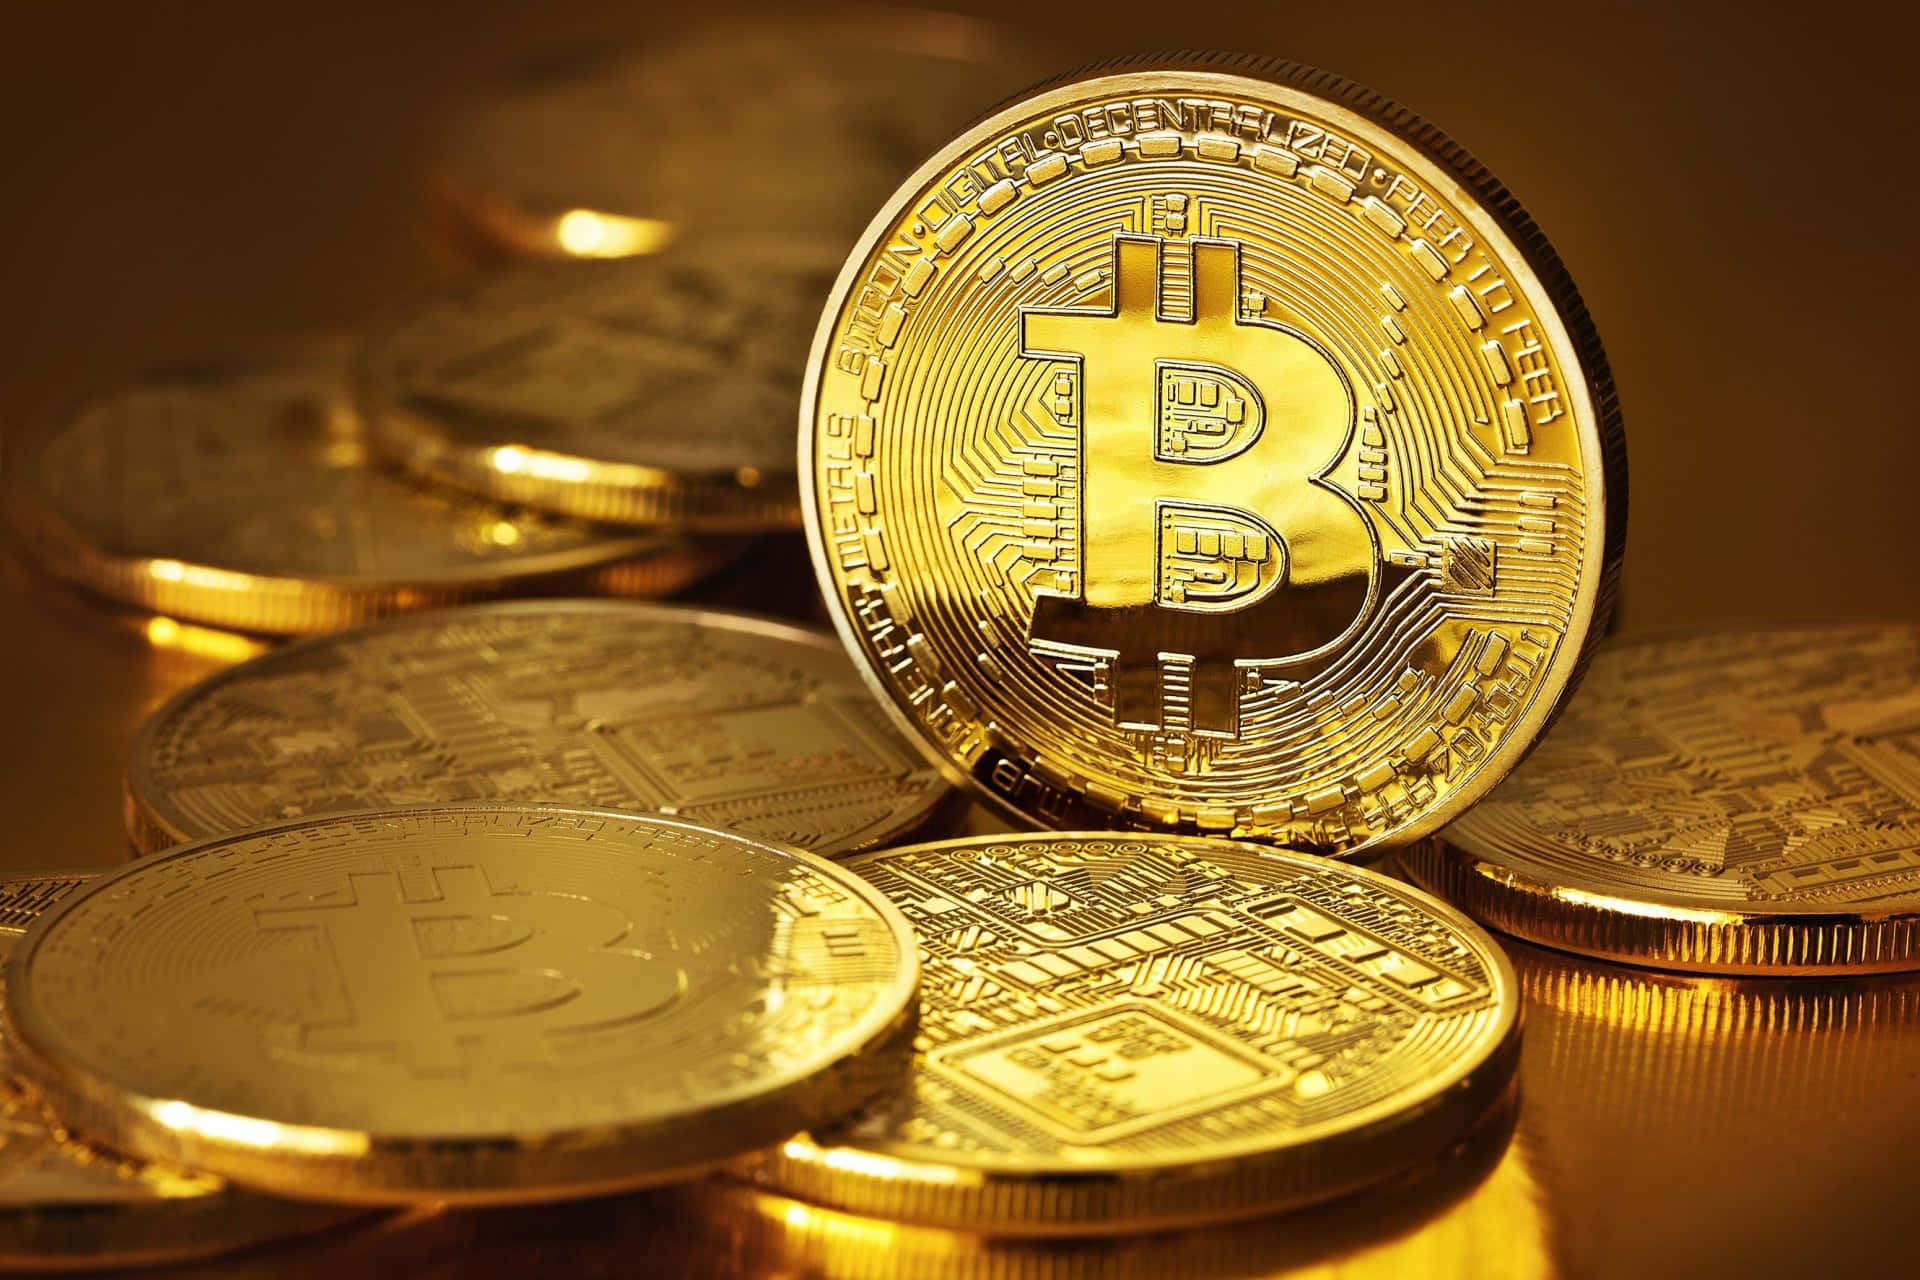 Laimagen De La Moneda Bitcoin Está Abriendo Un Nuevo Camino En Las Transacciones Financieras.